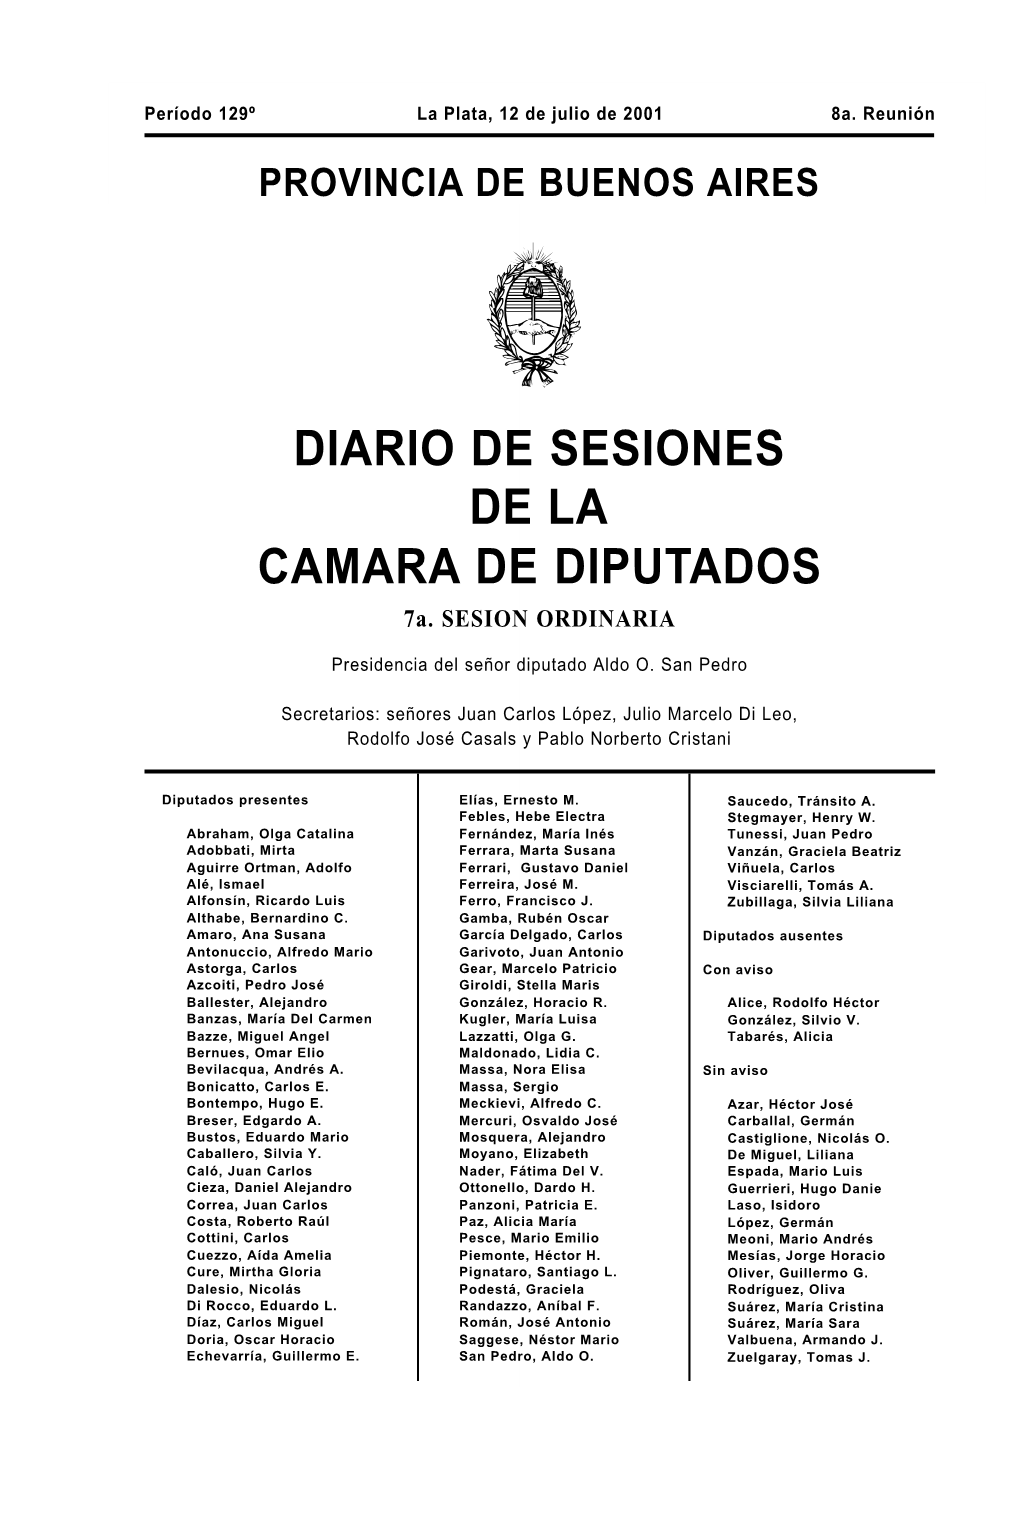 DIARIO DE SESIONES DE LA CAMARA DE DIPUTADOS 7A